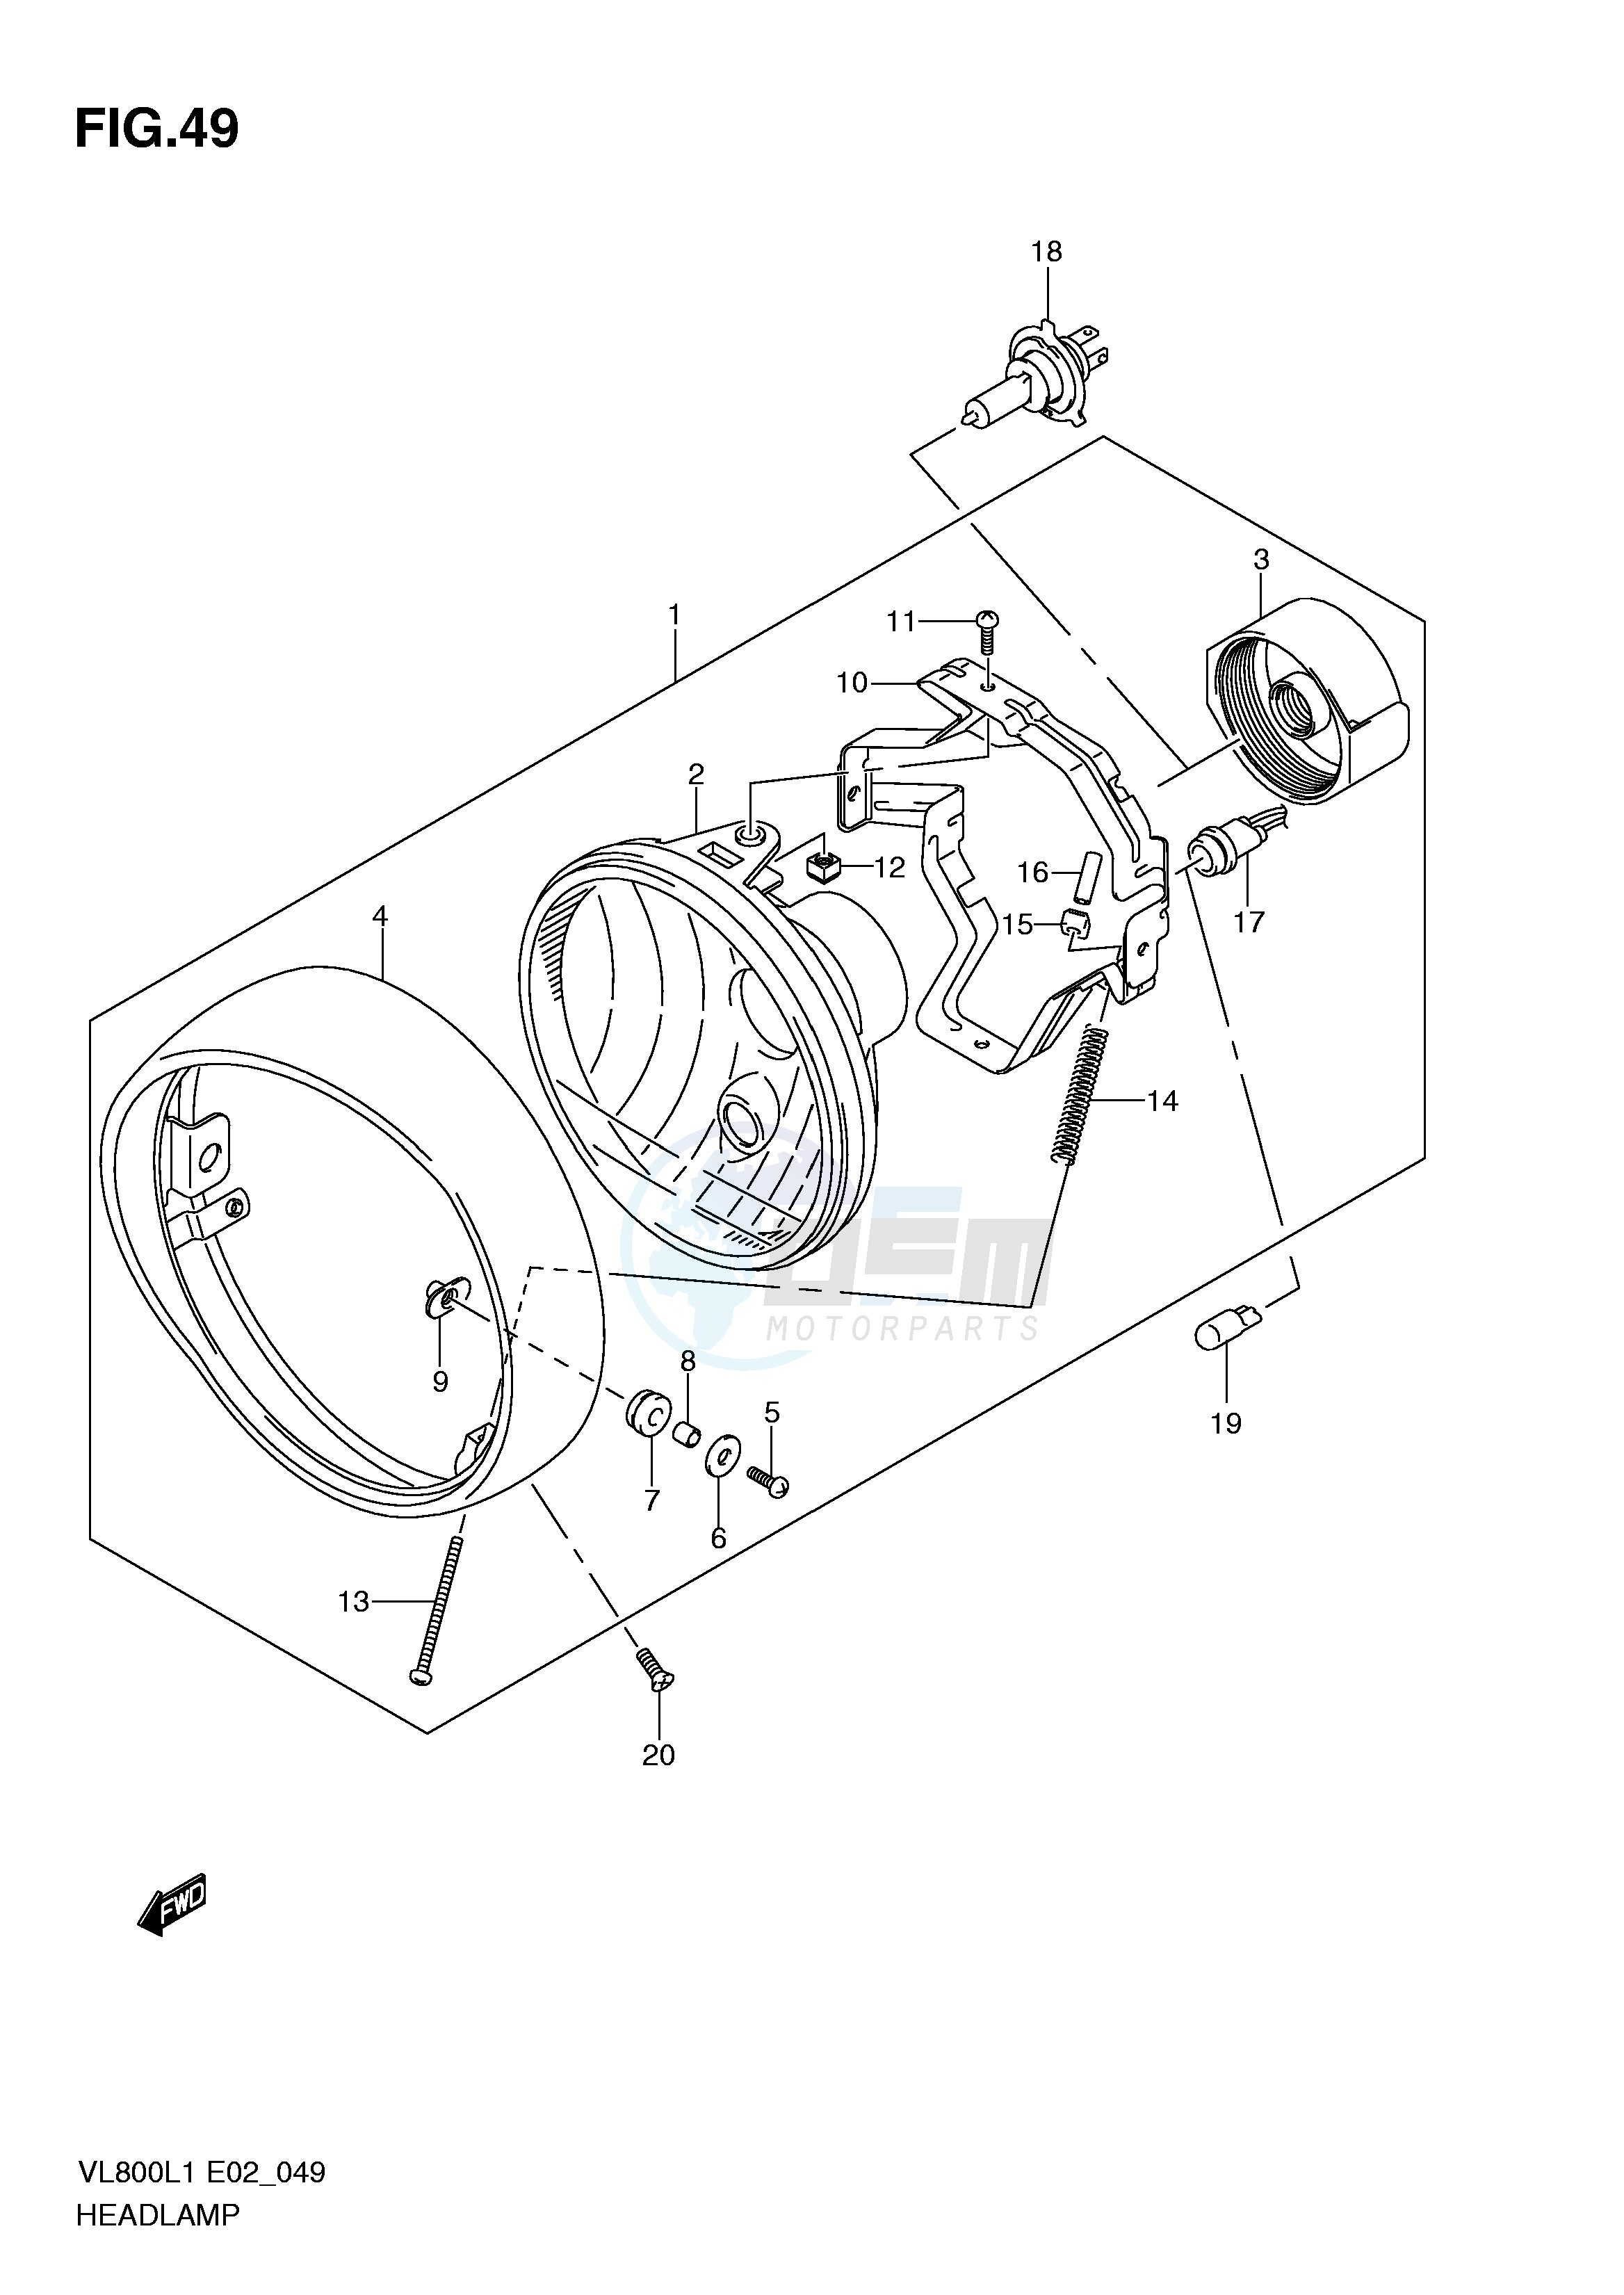 HEADLAMP ASSY (VL800CL1 E2) blueprint